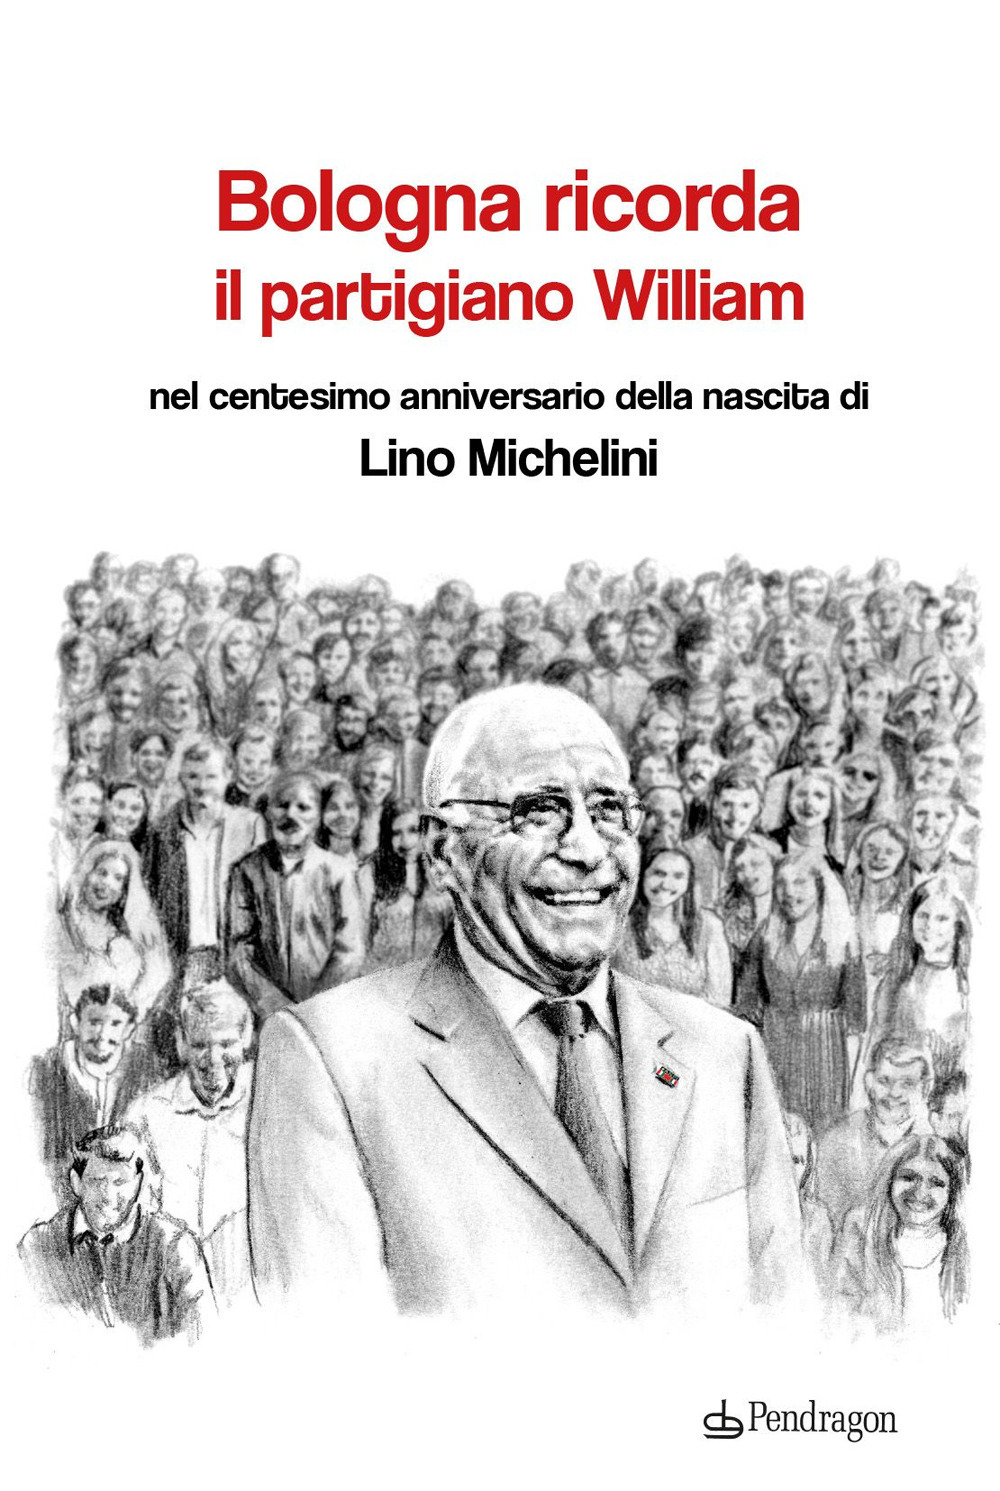 Bologna ricorda il partigiano William nel centesimo anniversario della nascita di Lino Michelini